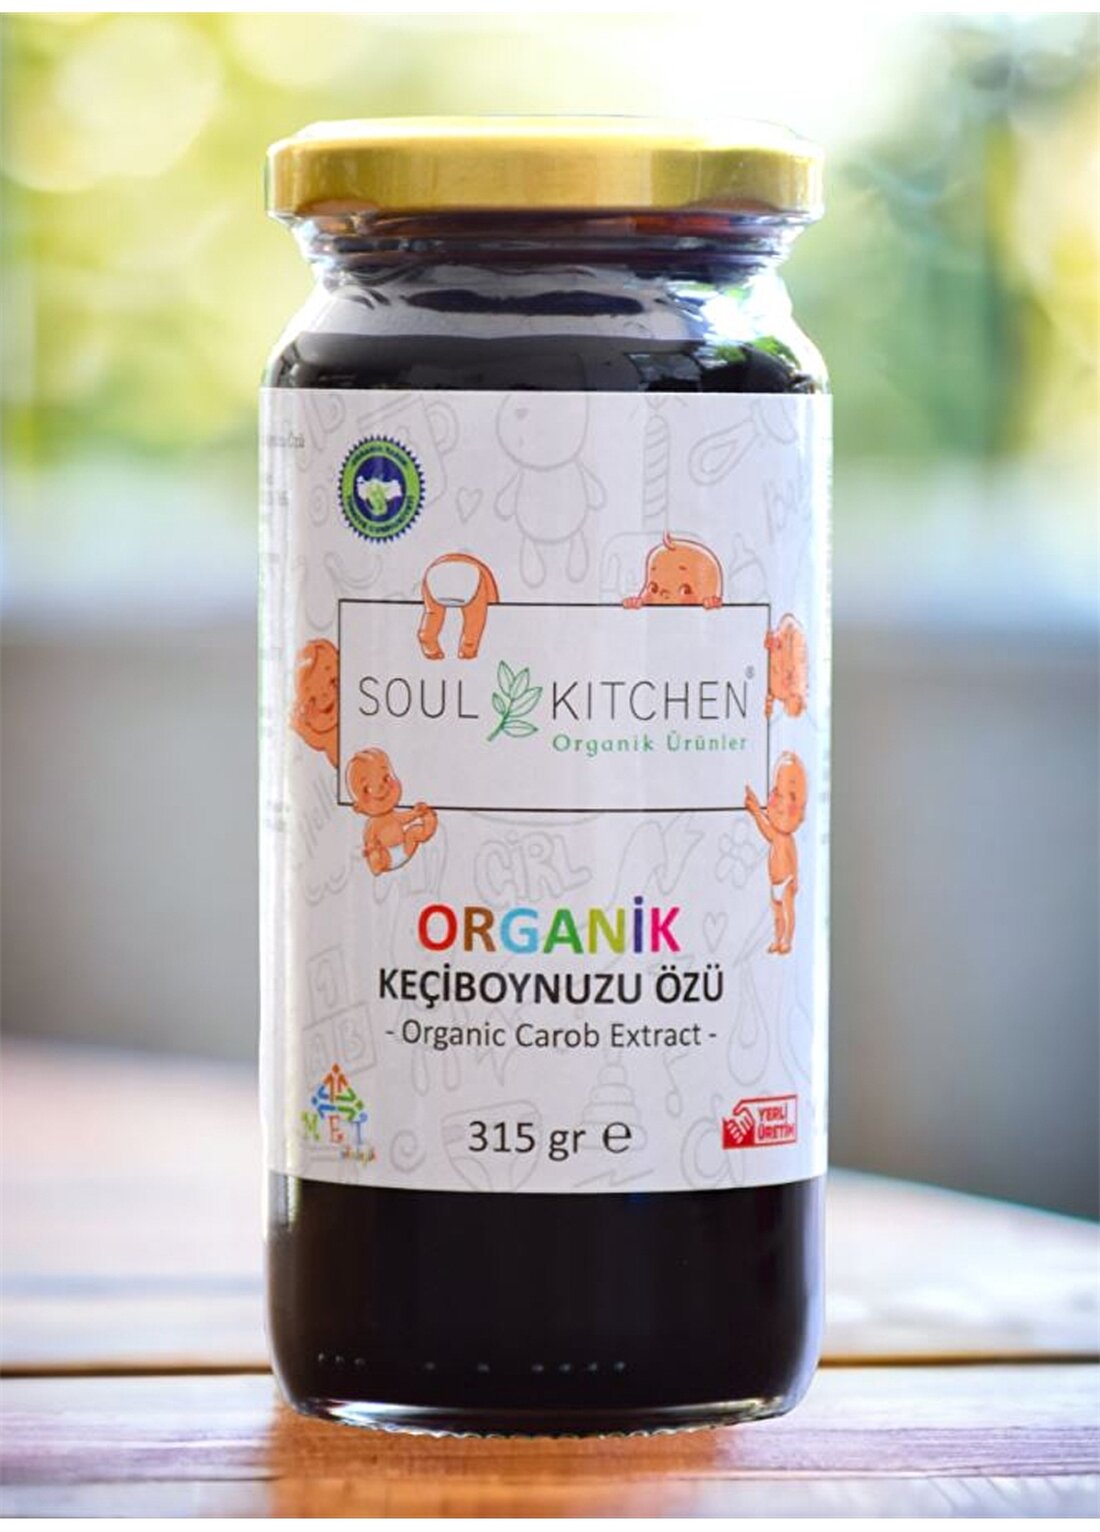 Soul Kitchen Organik Bebek Keçiboynuzu Özü 315Gr (Soğuk Sıkım) (Şeker İlavesiz)